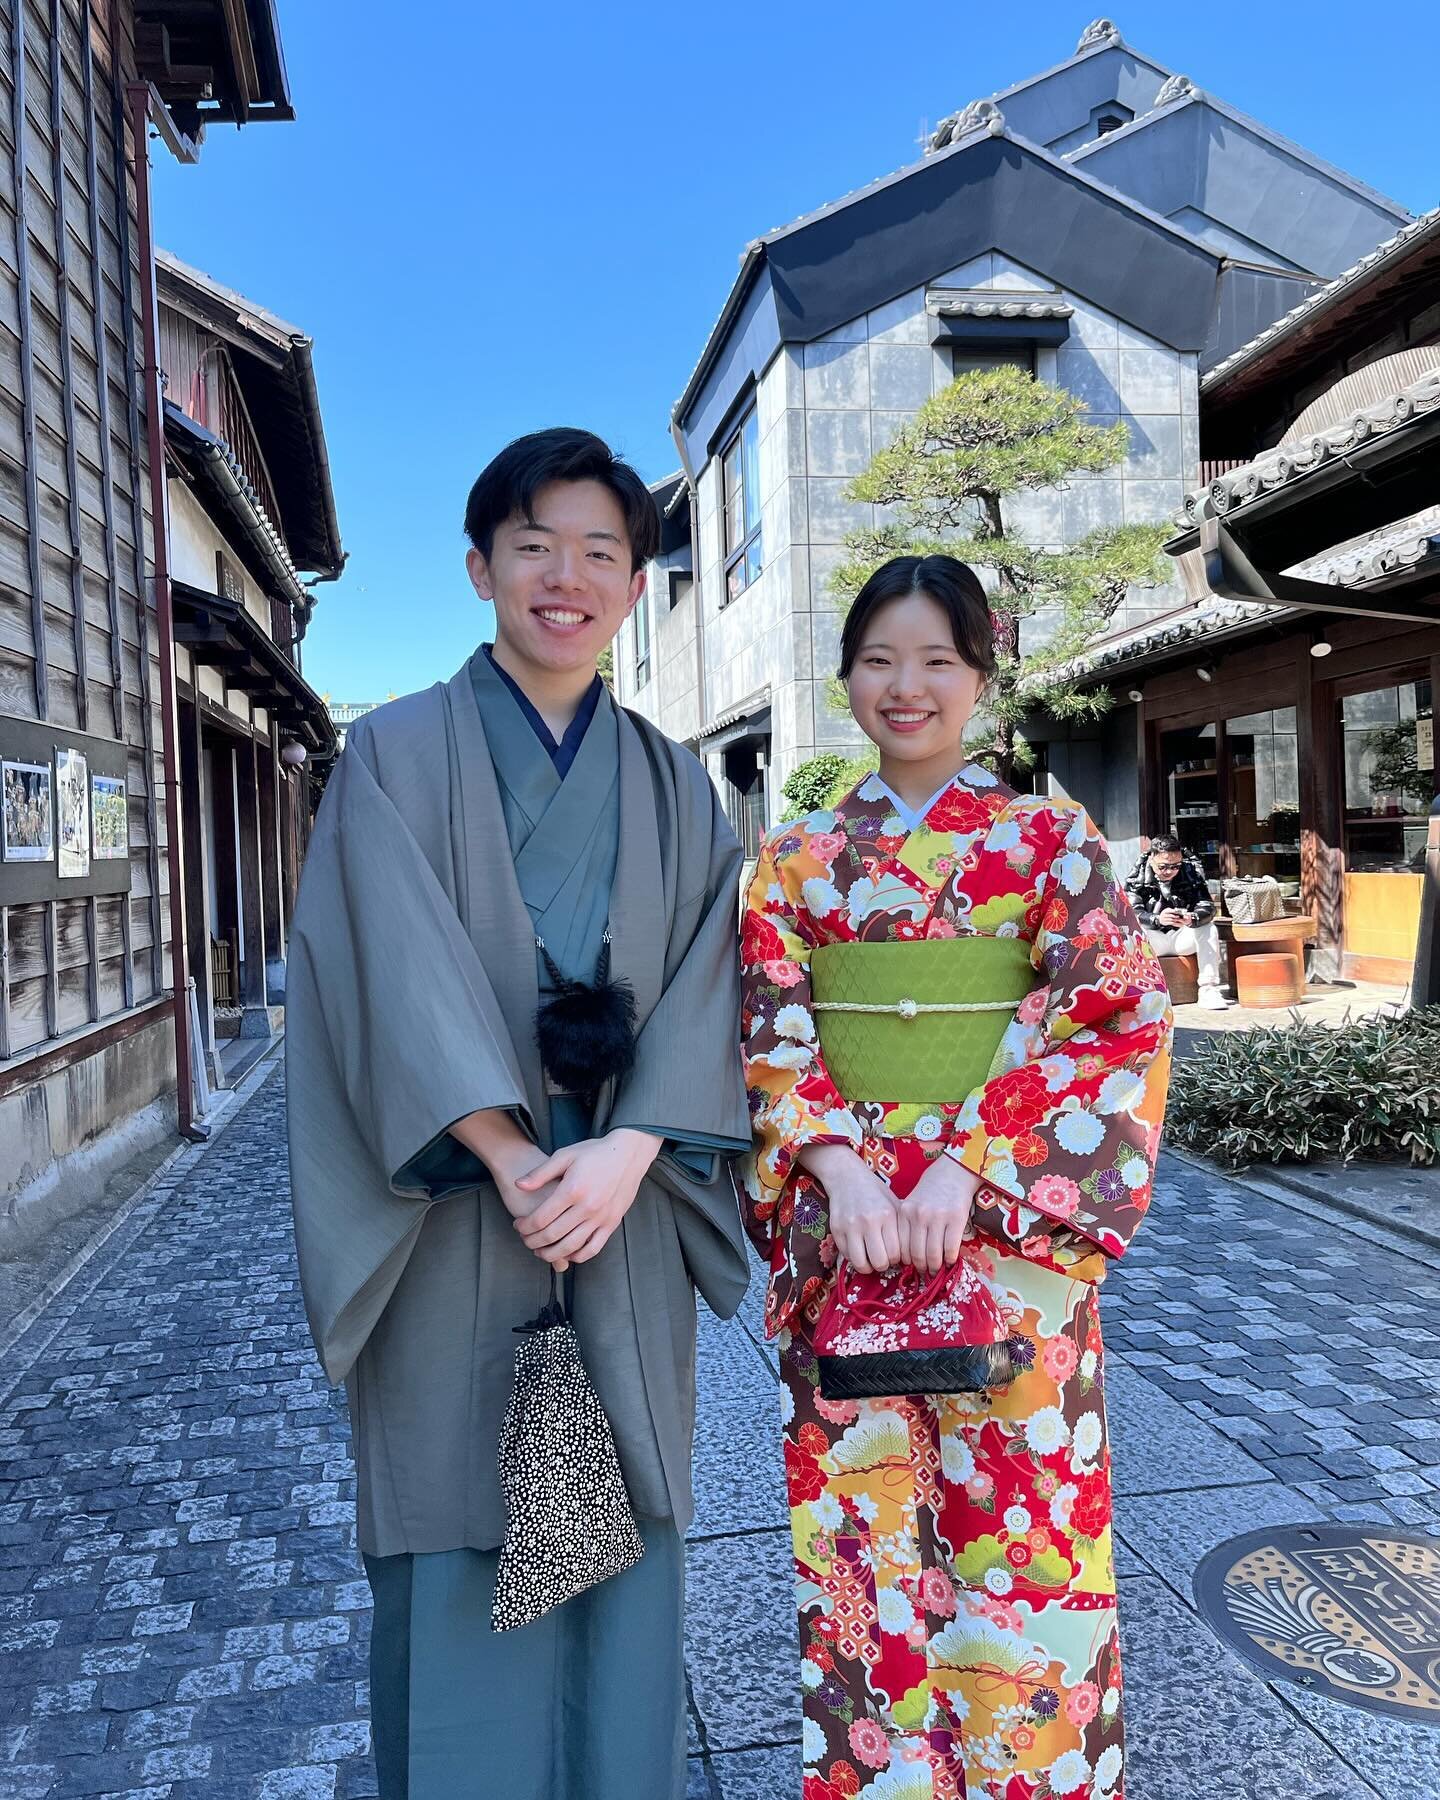 Kimono fashion while visiting Kawagoe&rsquo;s Warehouse District (蔵造りの町並み, Kurazukuri no Machinami) Arigato gozaimasu to all the lovely people that let me take photos of them. 😃🙏🏻💕💕💕 - photos by @benjaminkwanphoto 
:
:
:
:
:
#kimono #kimonofash